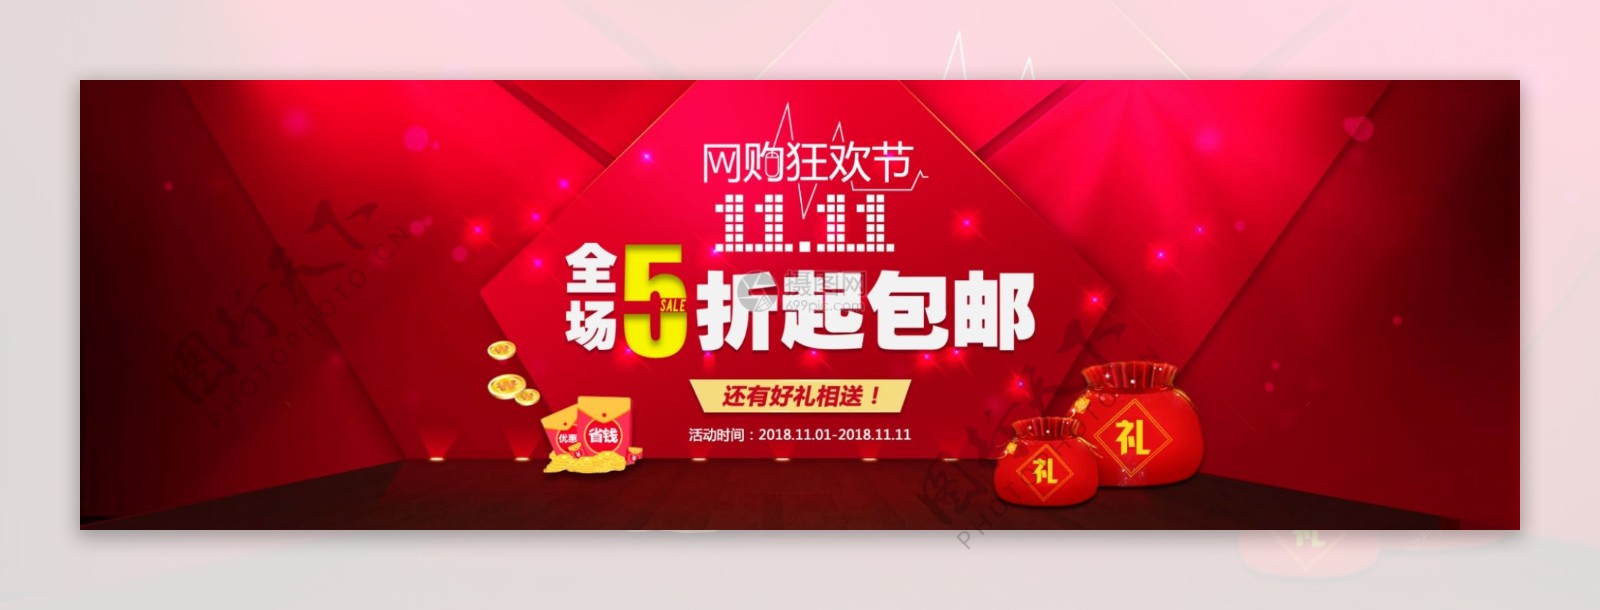 双11网购狂欢节banner海报